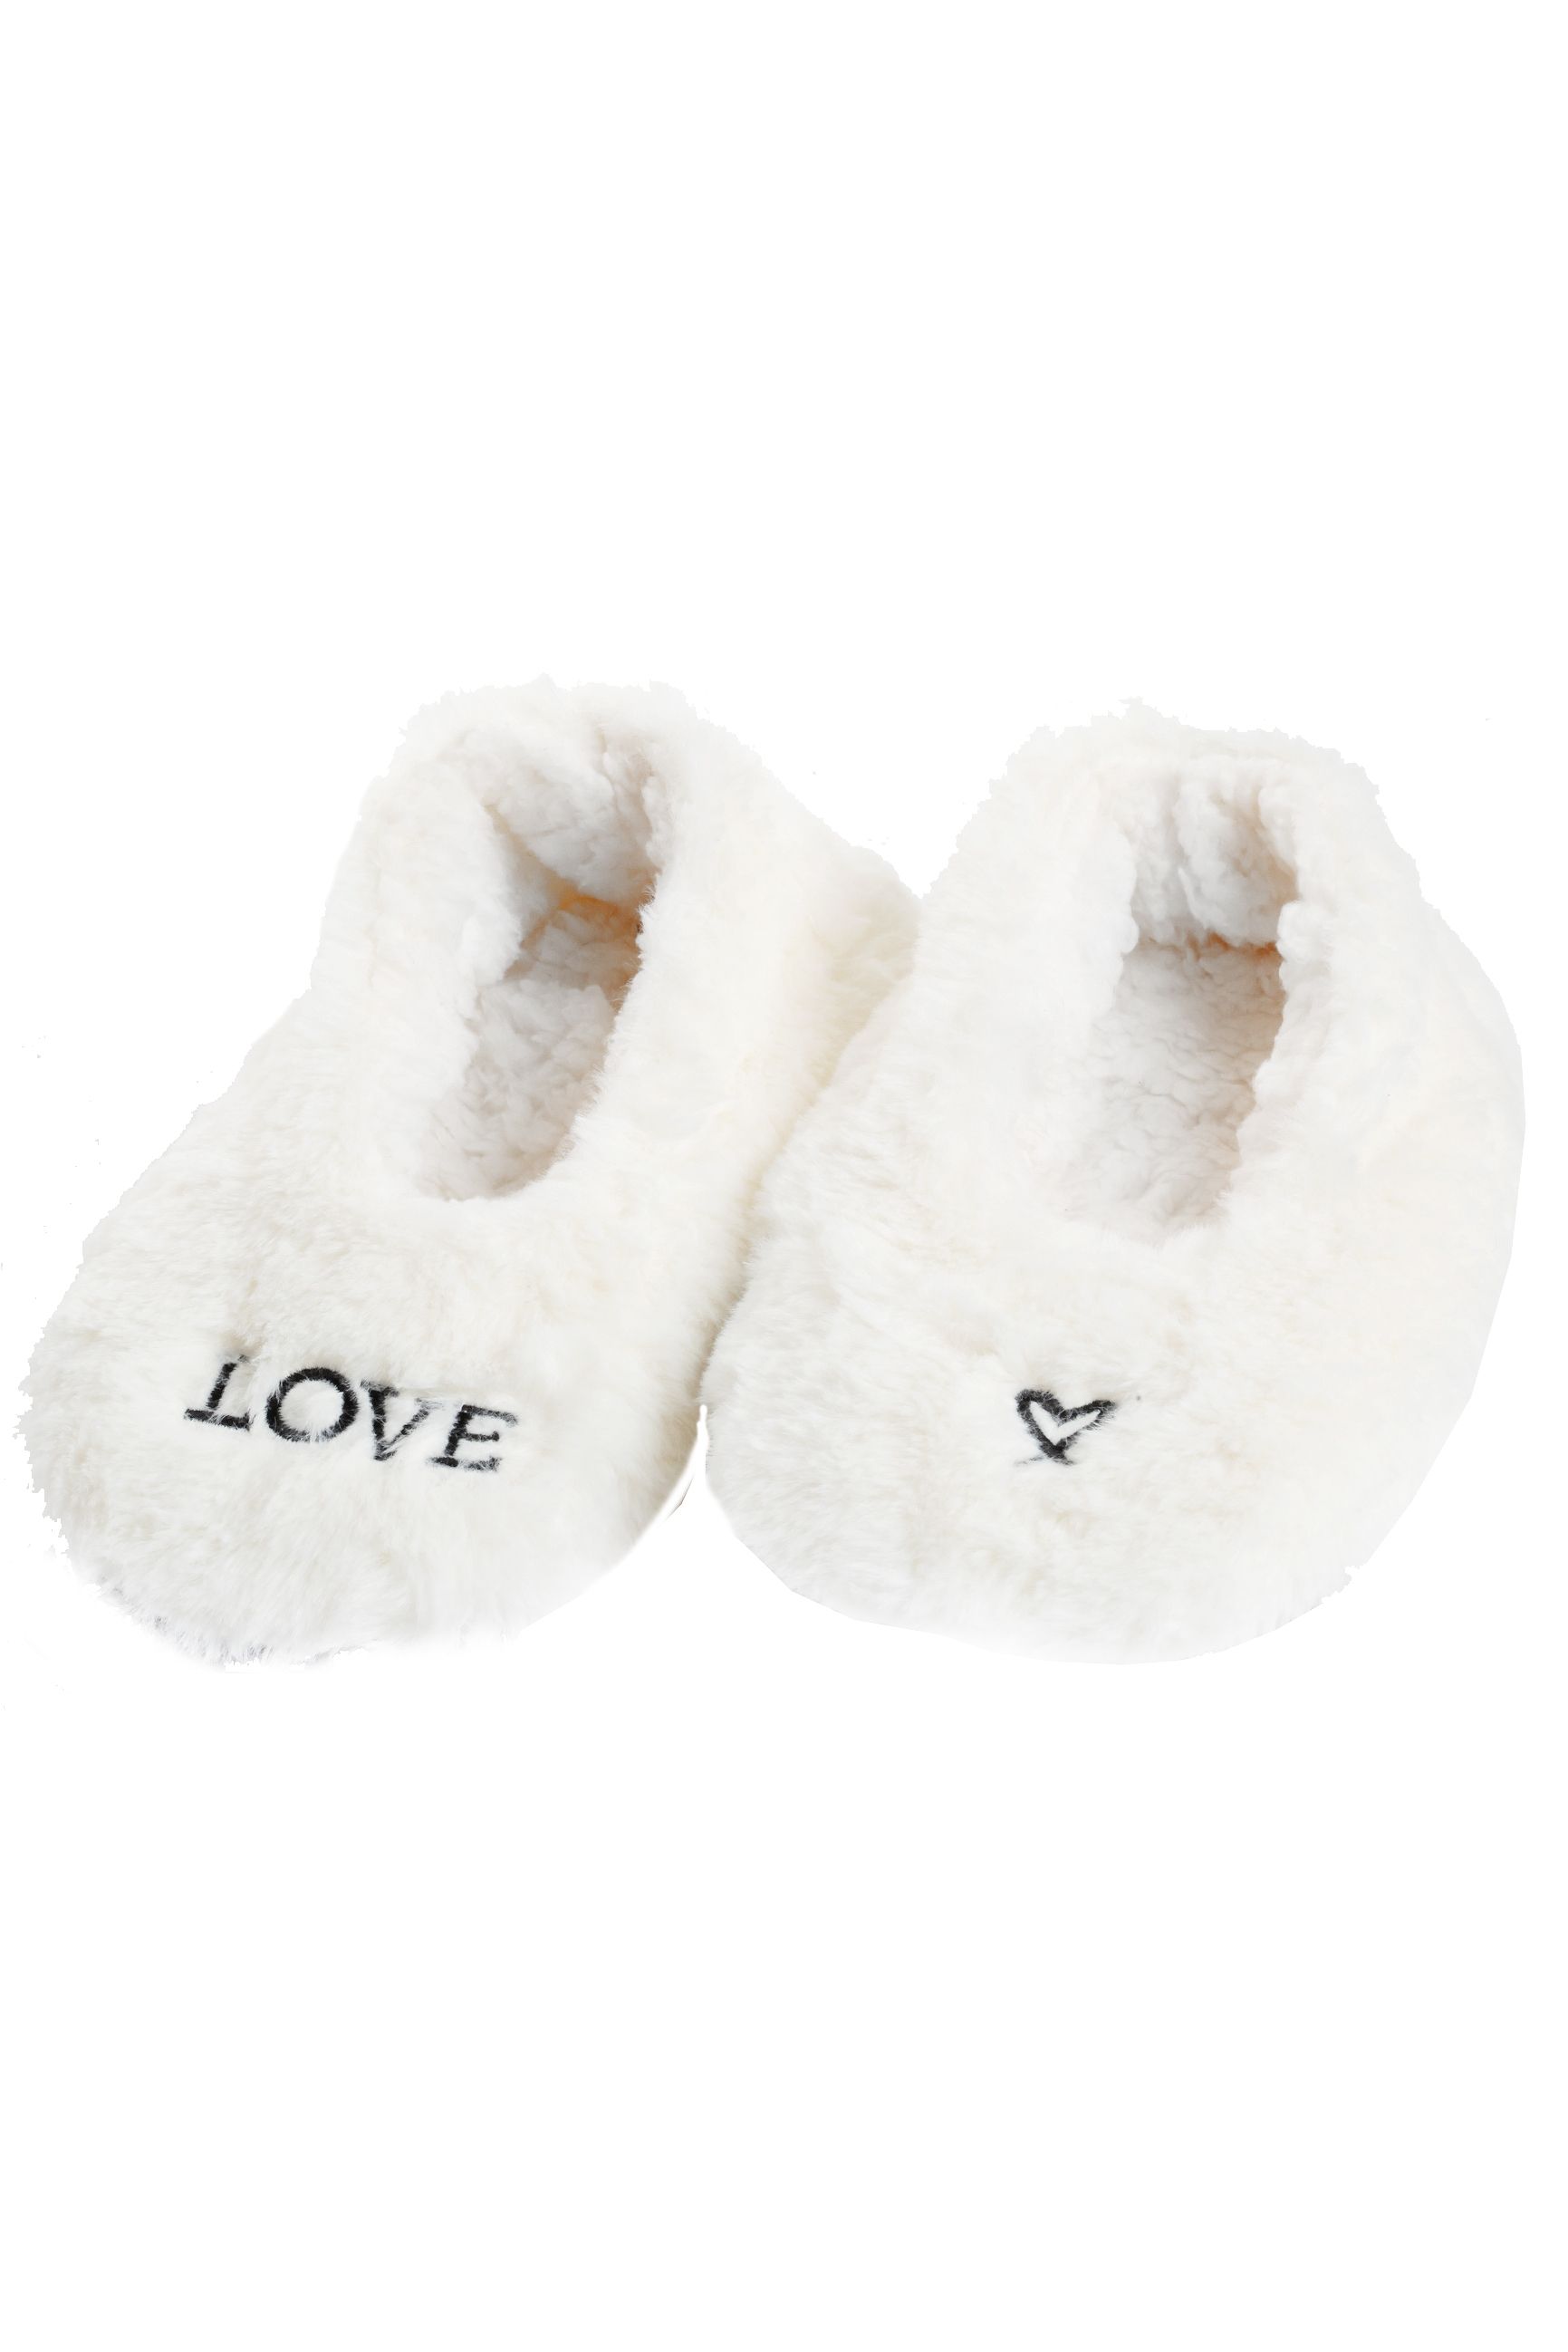 HEART white slippers | Sokisahtel